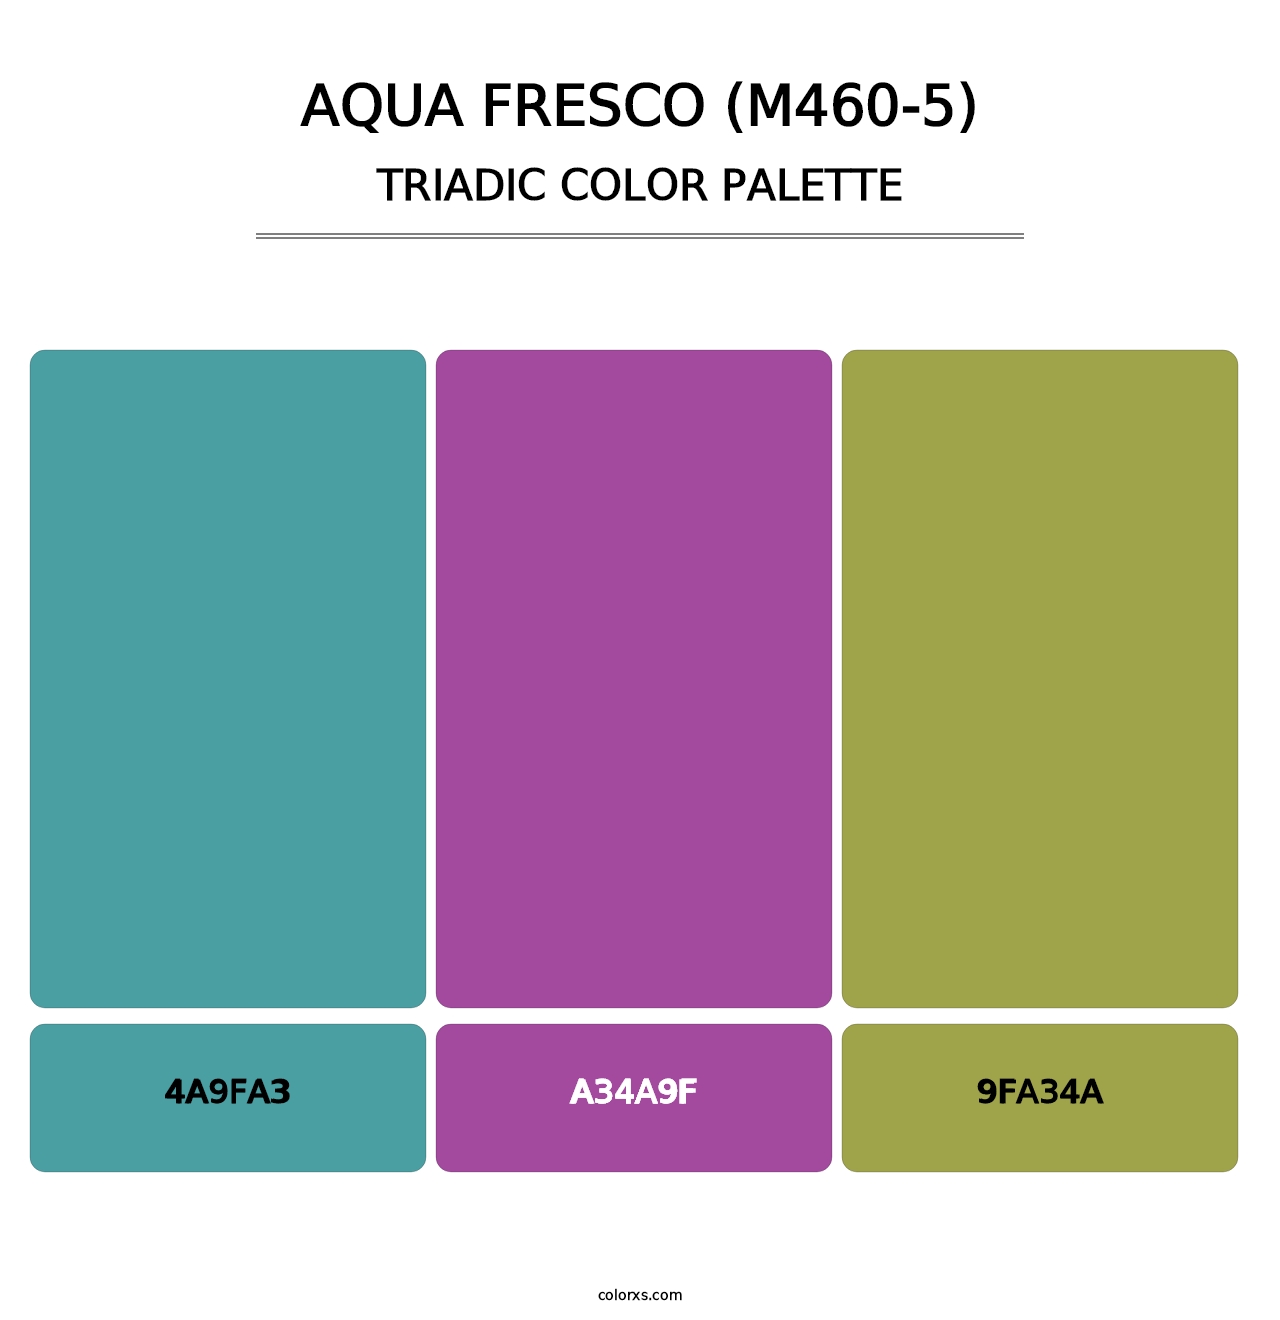 Aqua Fresco (M460-5) - Triadic Color Palette